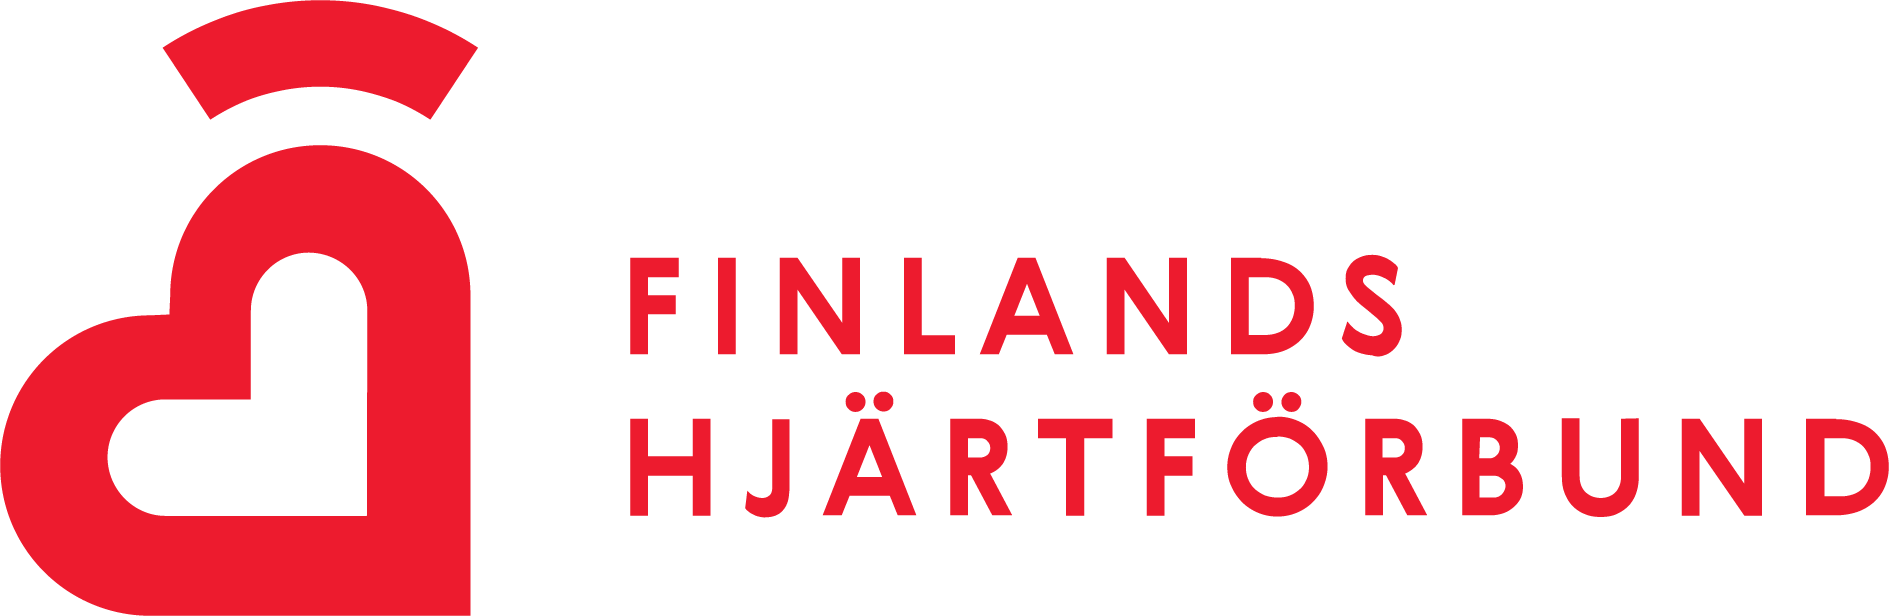 Finlands Hjärtförbundet rf